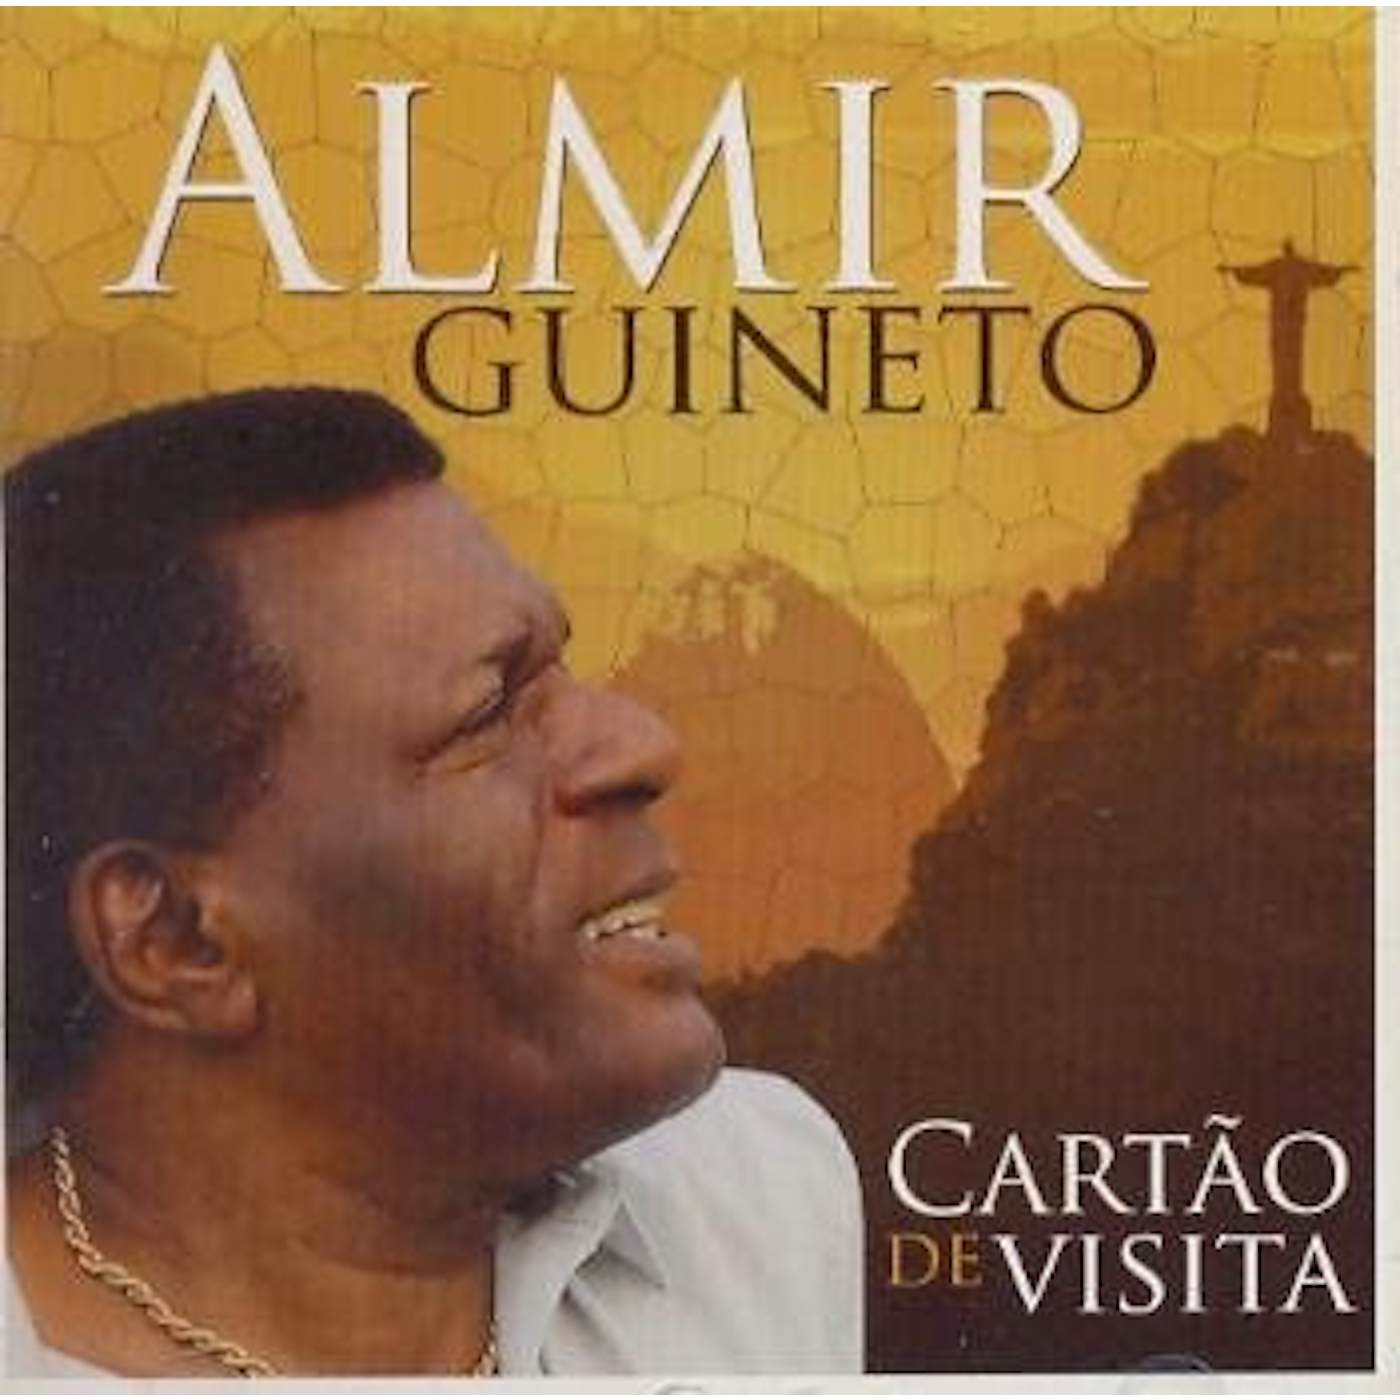 Almir Guineto CARTAO DE VISITA CD